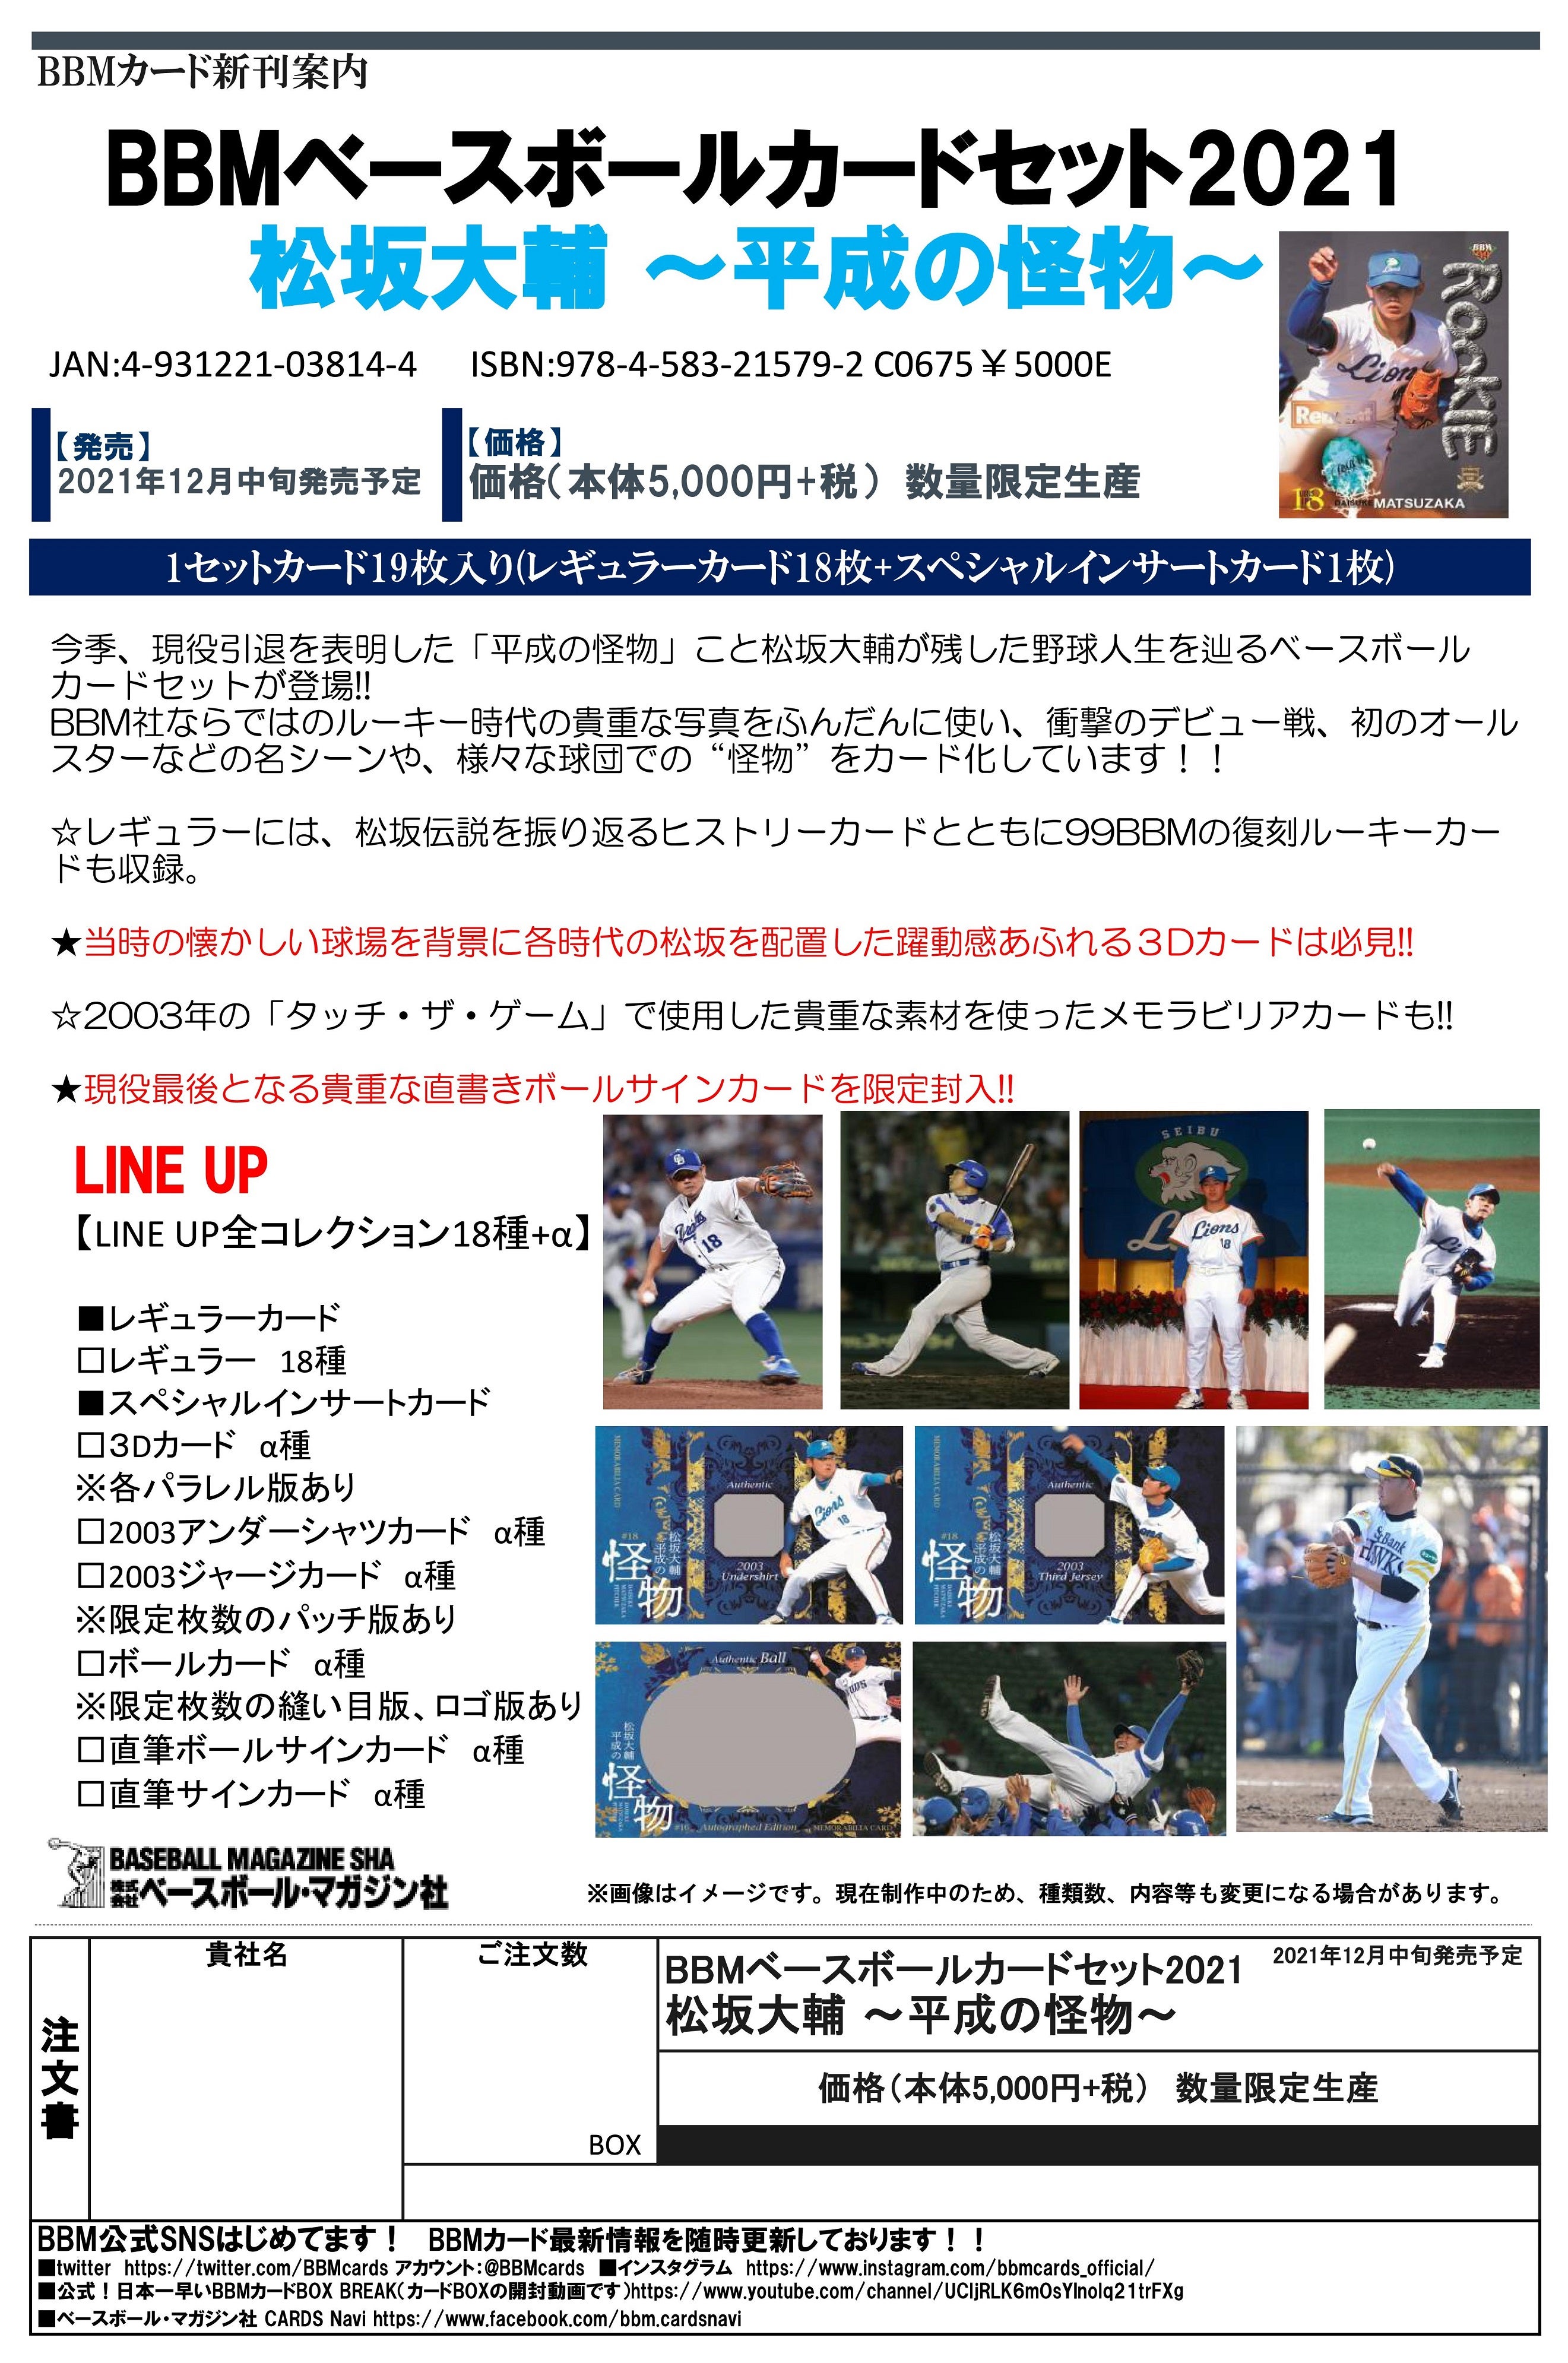 リスト公開！12月16日発売 BBM ベースボールカードセット2021 松坂大輔